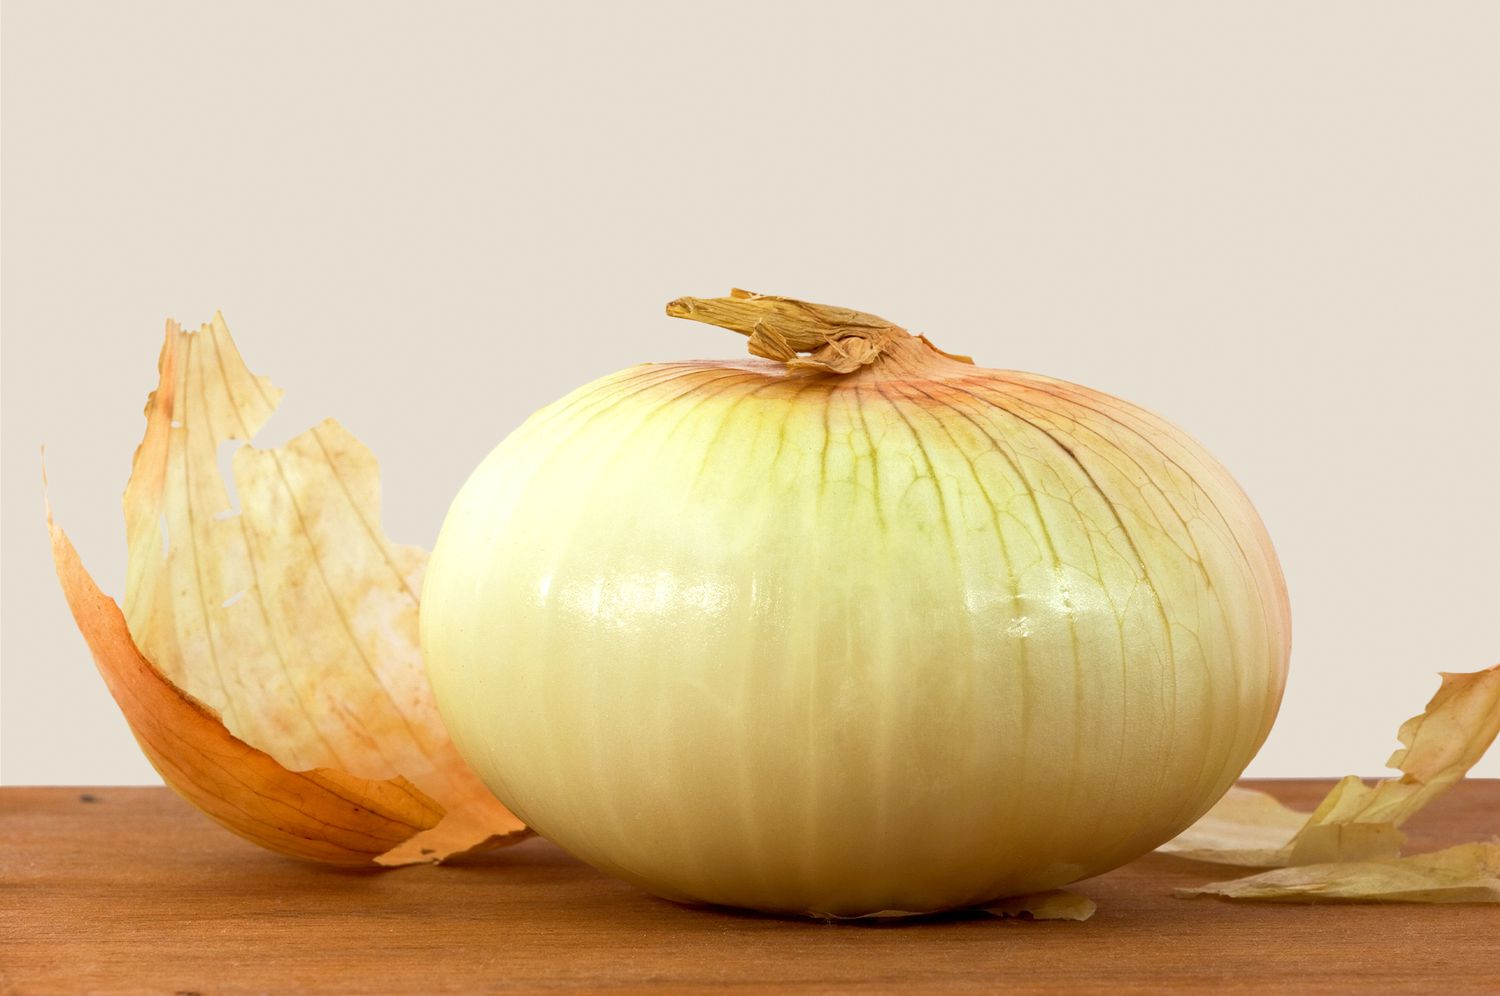 vidalia onion